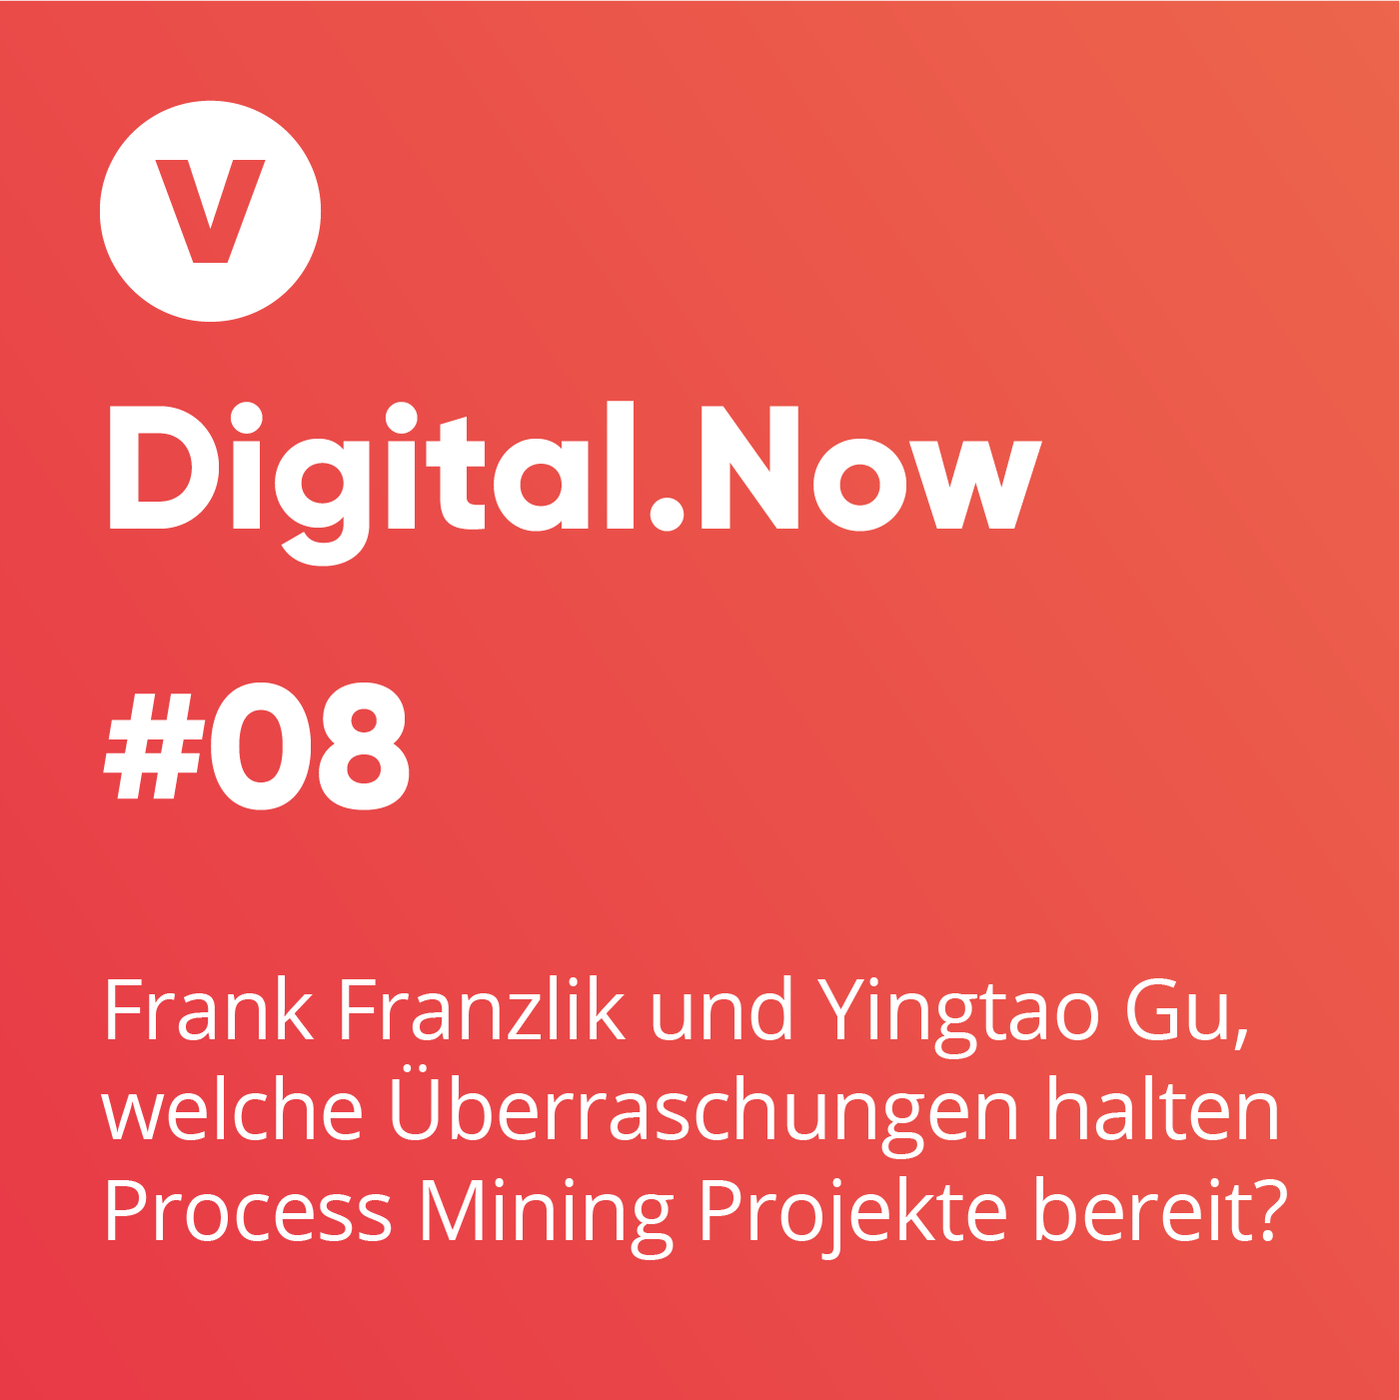 Frank Franzlik und Yingtao Gu, welche Überraschungen halten Process Mining Projekte bereit?